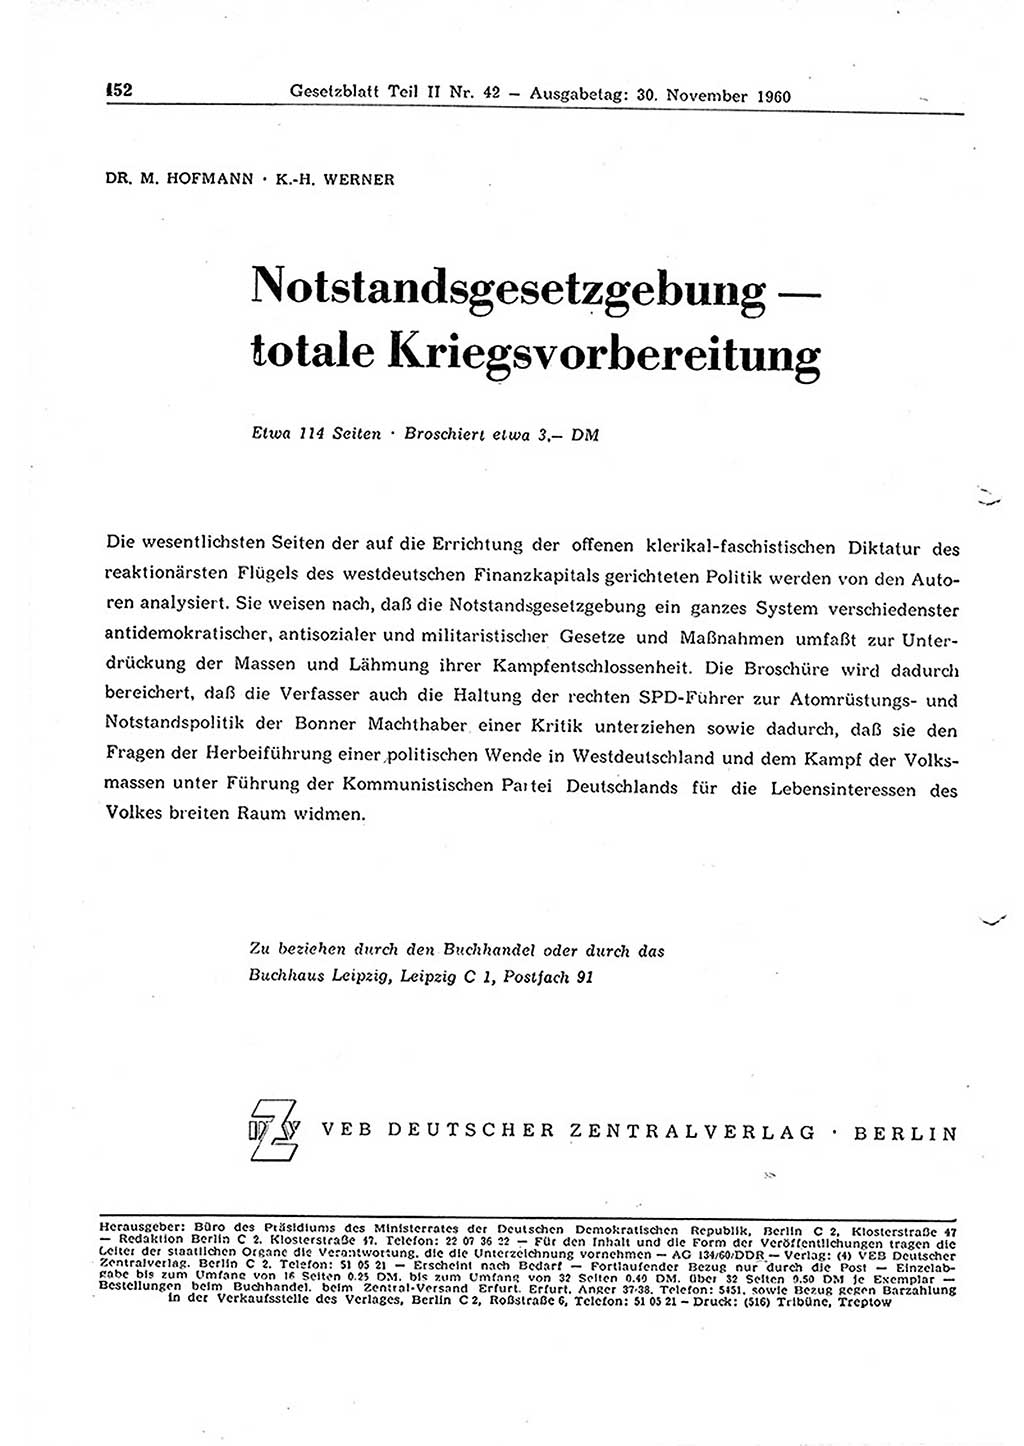 Gesetzblatt (GBl.) der Deutschen Demokratischen Republik (DDR) Teil ⅠⅠ 1960, Seite 452 (GBl. DDR ⅠⅠ 1960, S. 452)